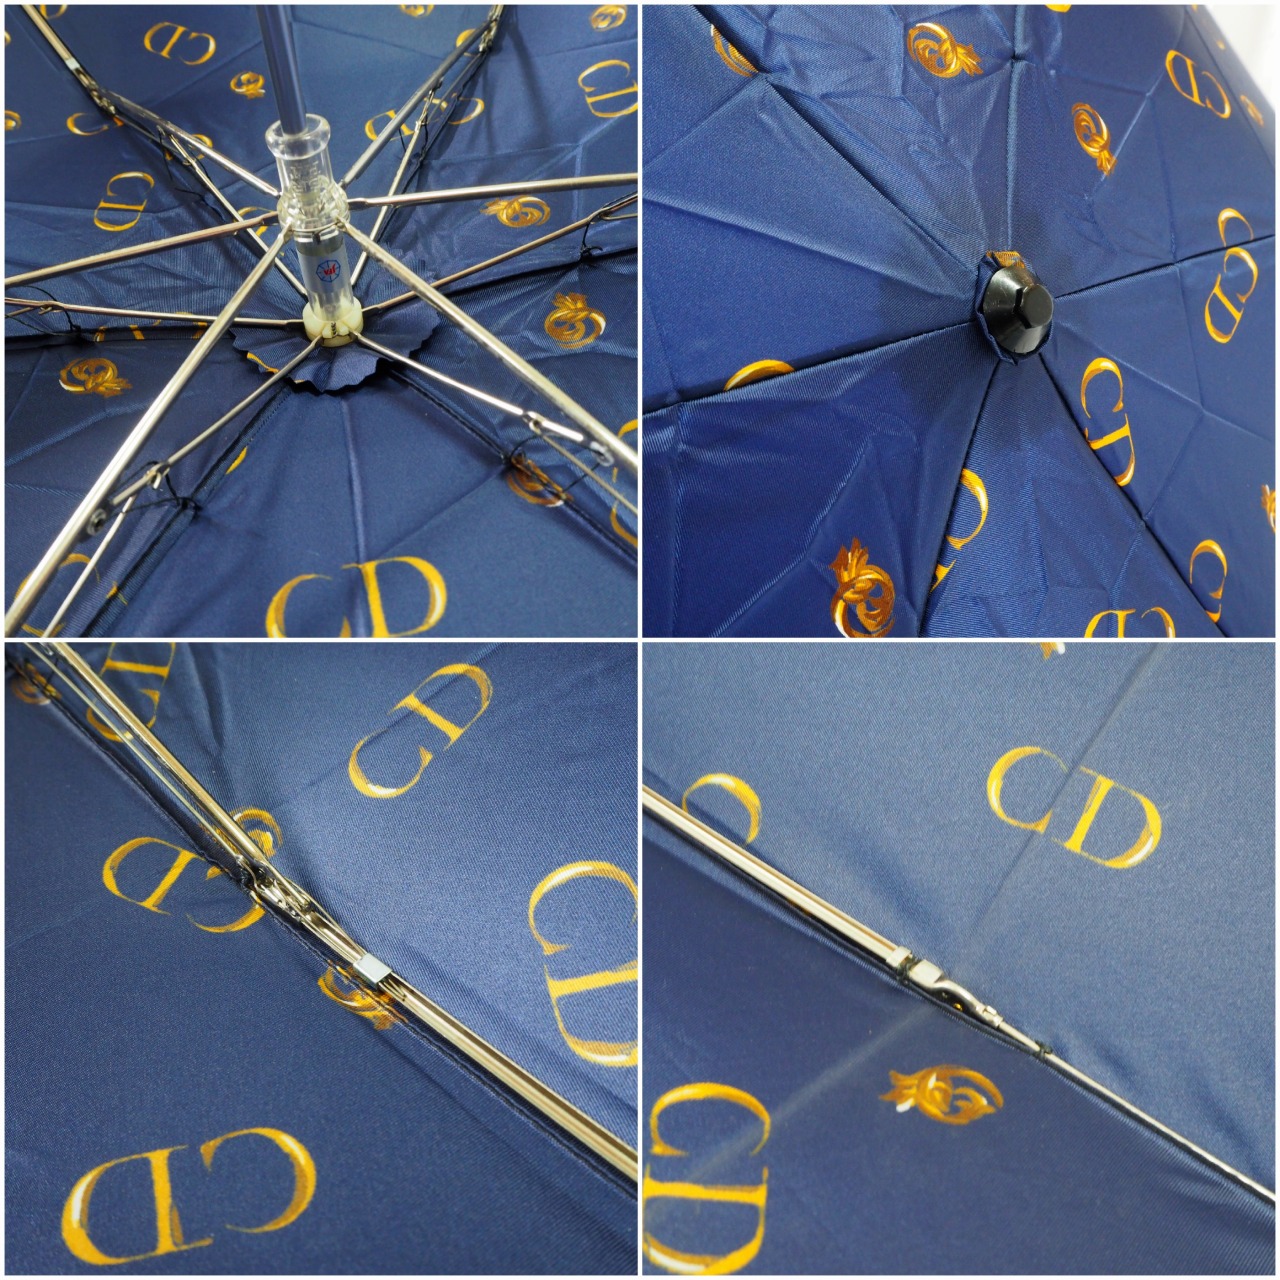 中古】【良い】 Christian Dior クリスチャンディオール 折りたたみ傘